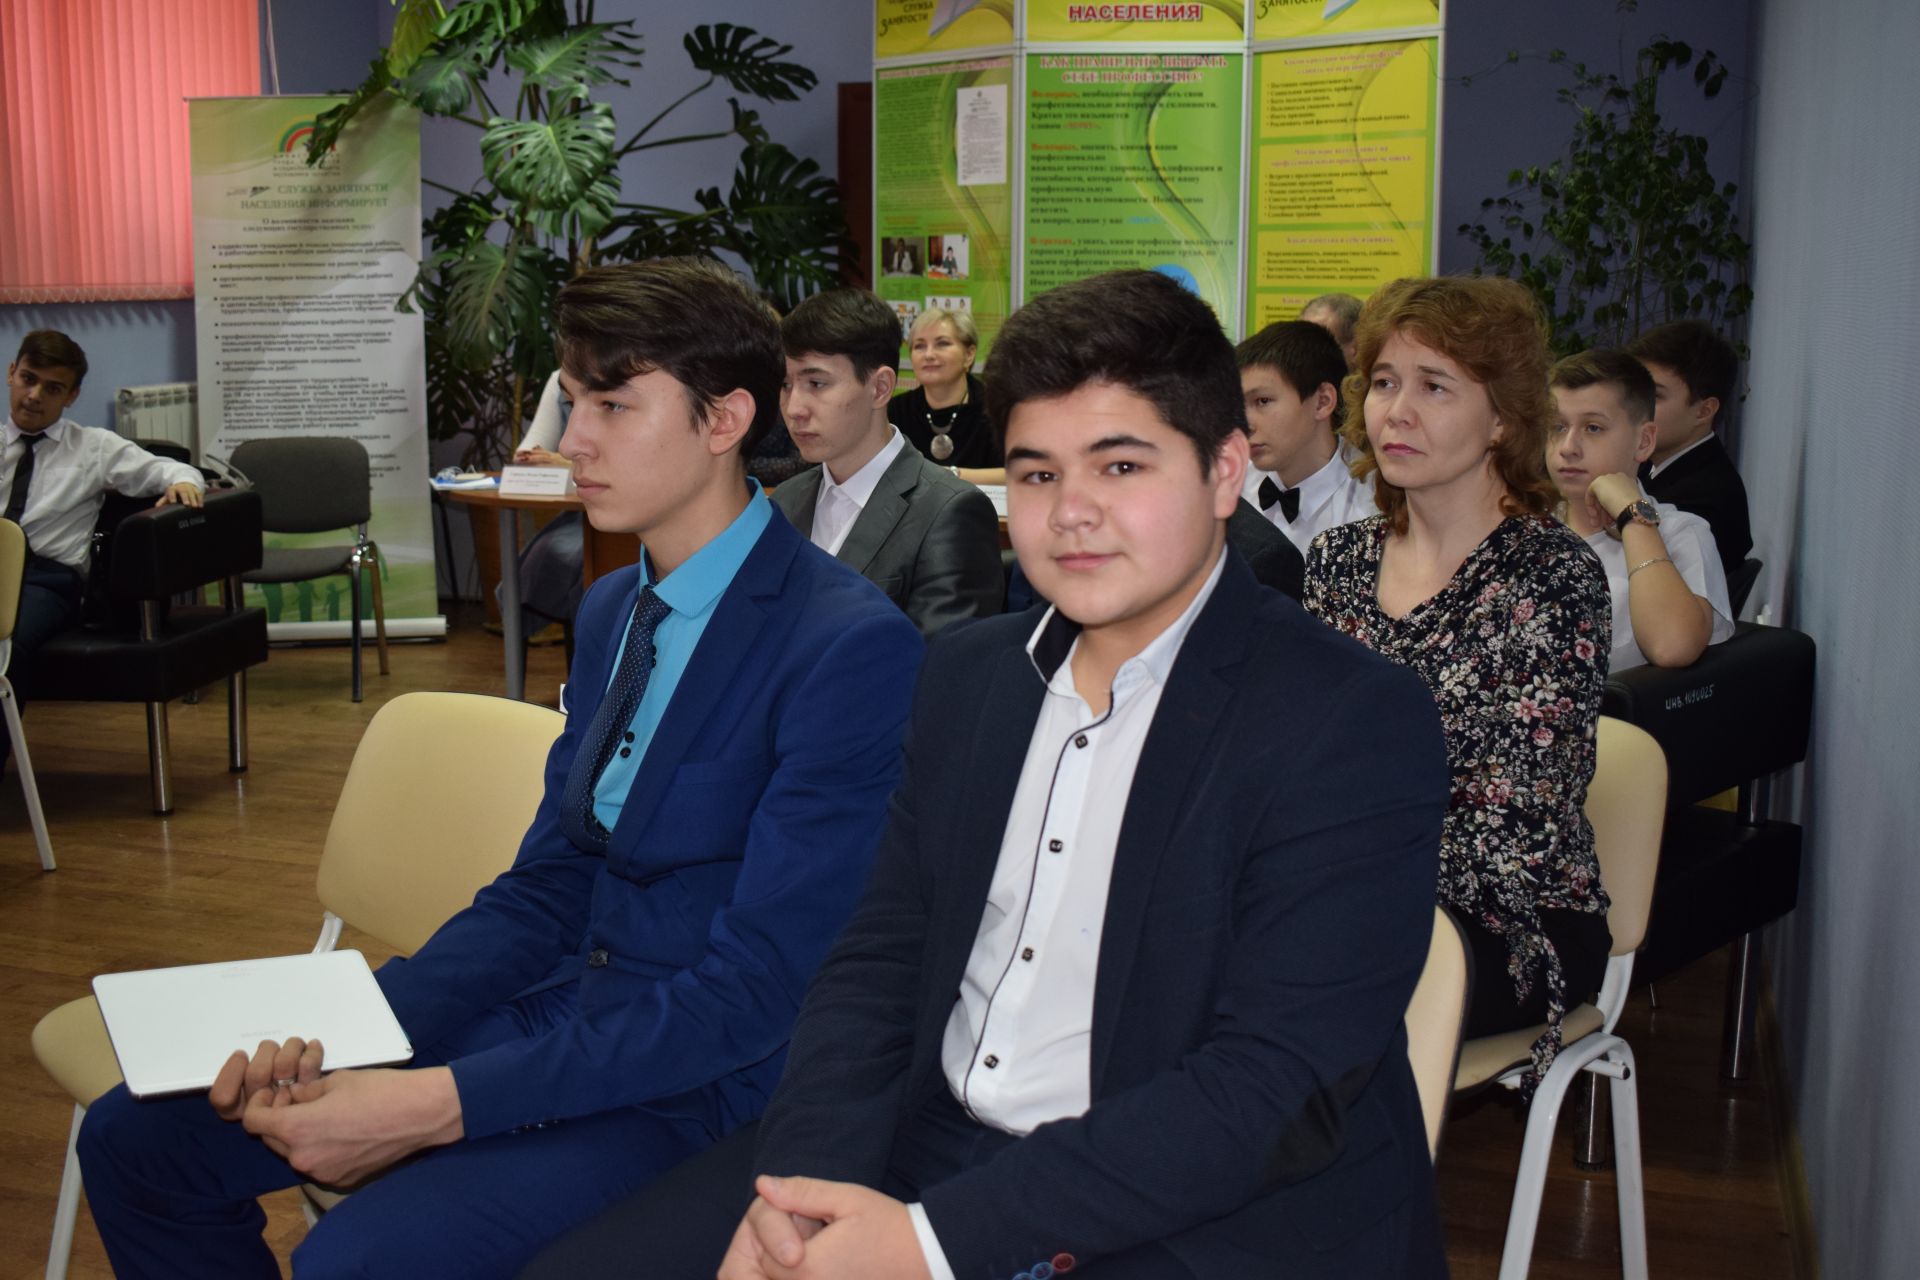 Старшеклассники, прошедшие обучение на курсах «Основы бизнеса» в Центре занятости населения города Азнакаево, защитили свои проекты, разработанные на основе полученных здесь знаний